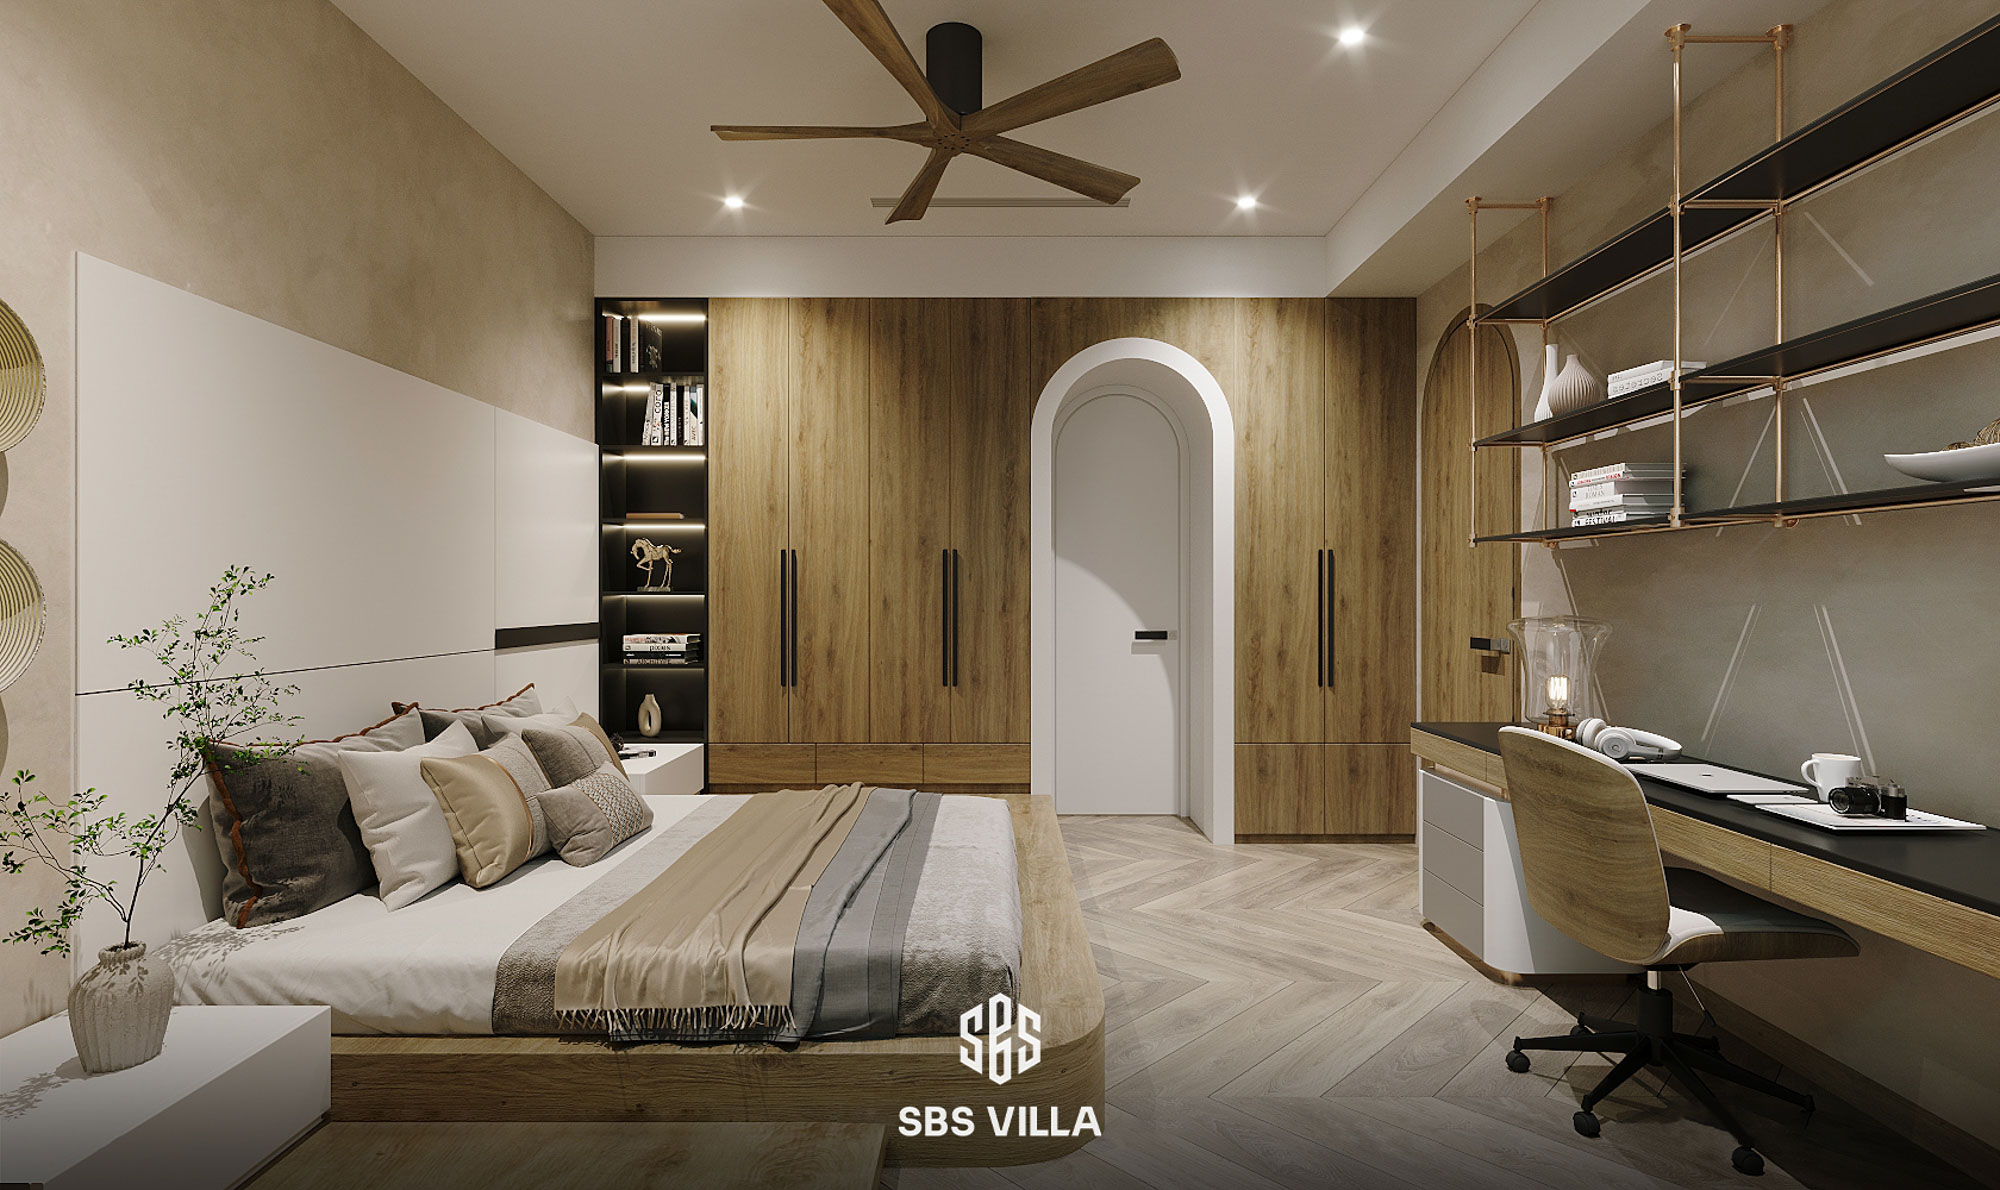 Không gian phòng ngủ được kiến tạo từ chất liệu gỗ thô mộc, mang cảm giác gần gũi